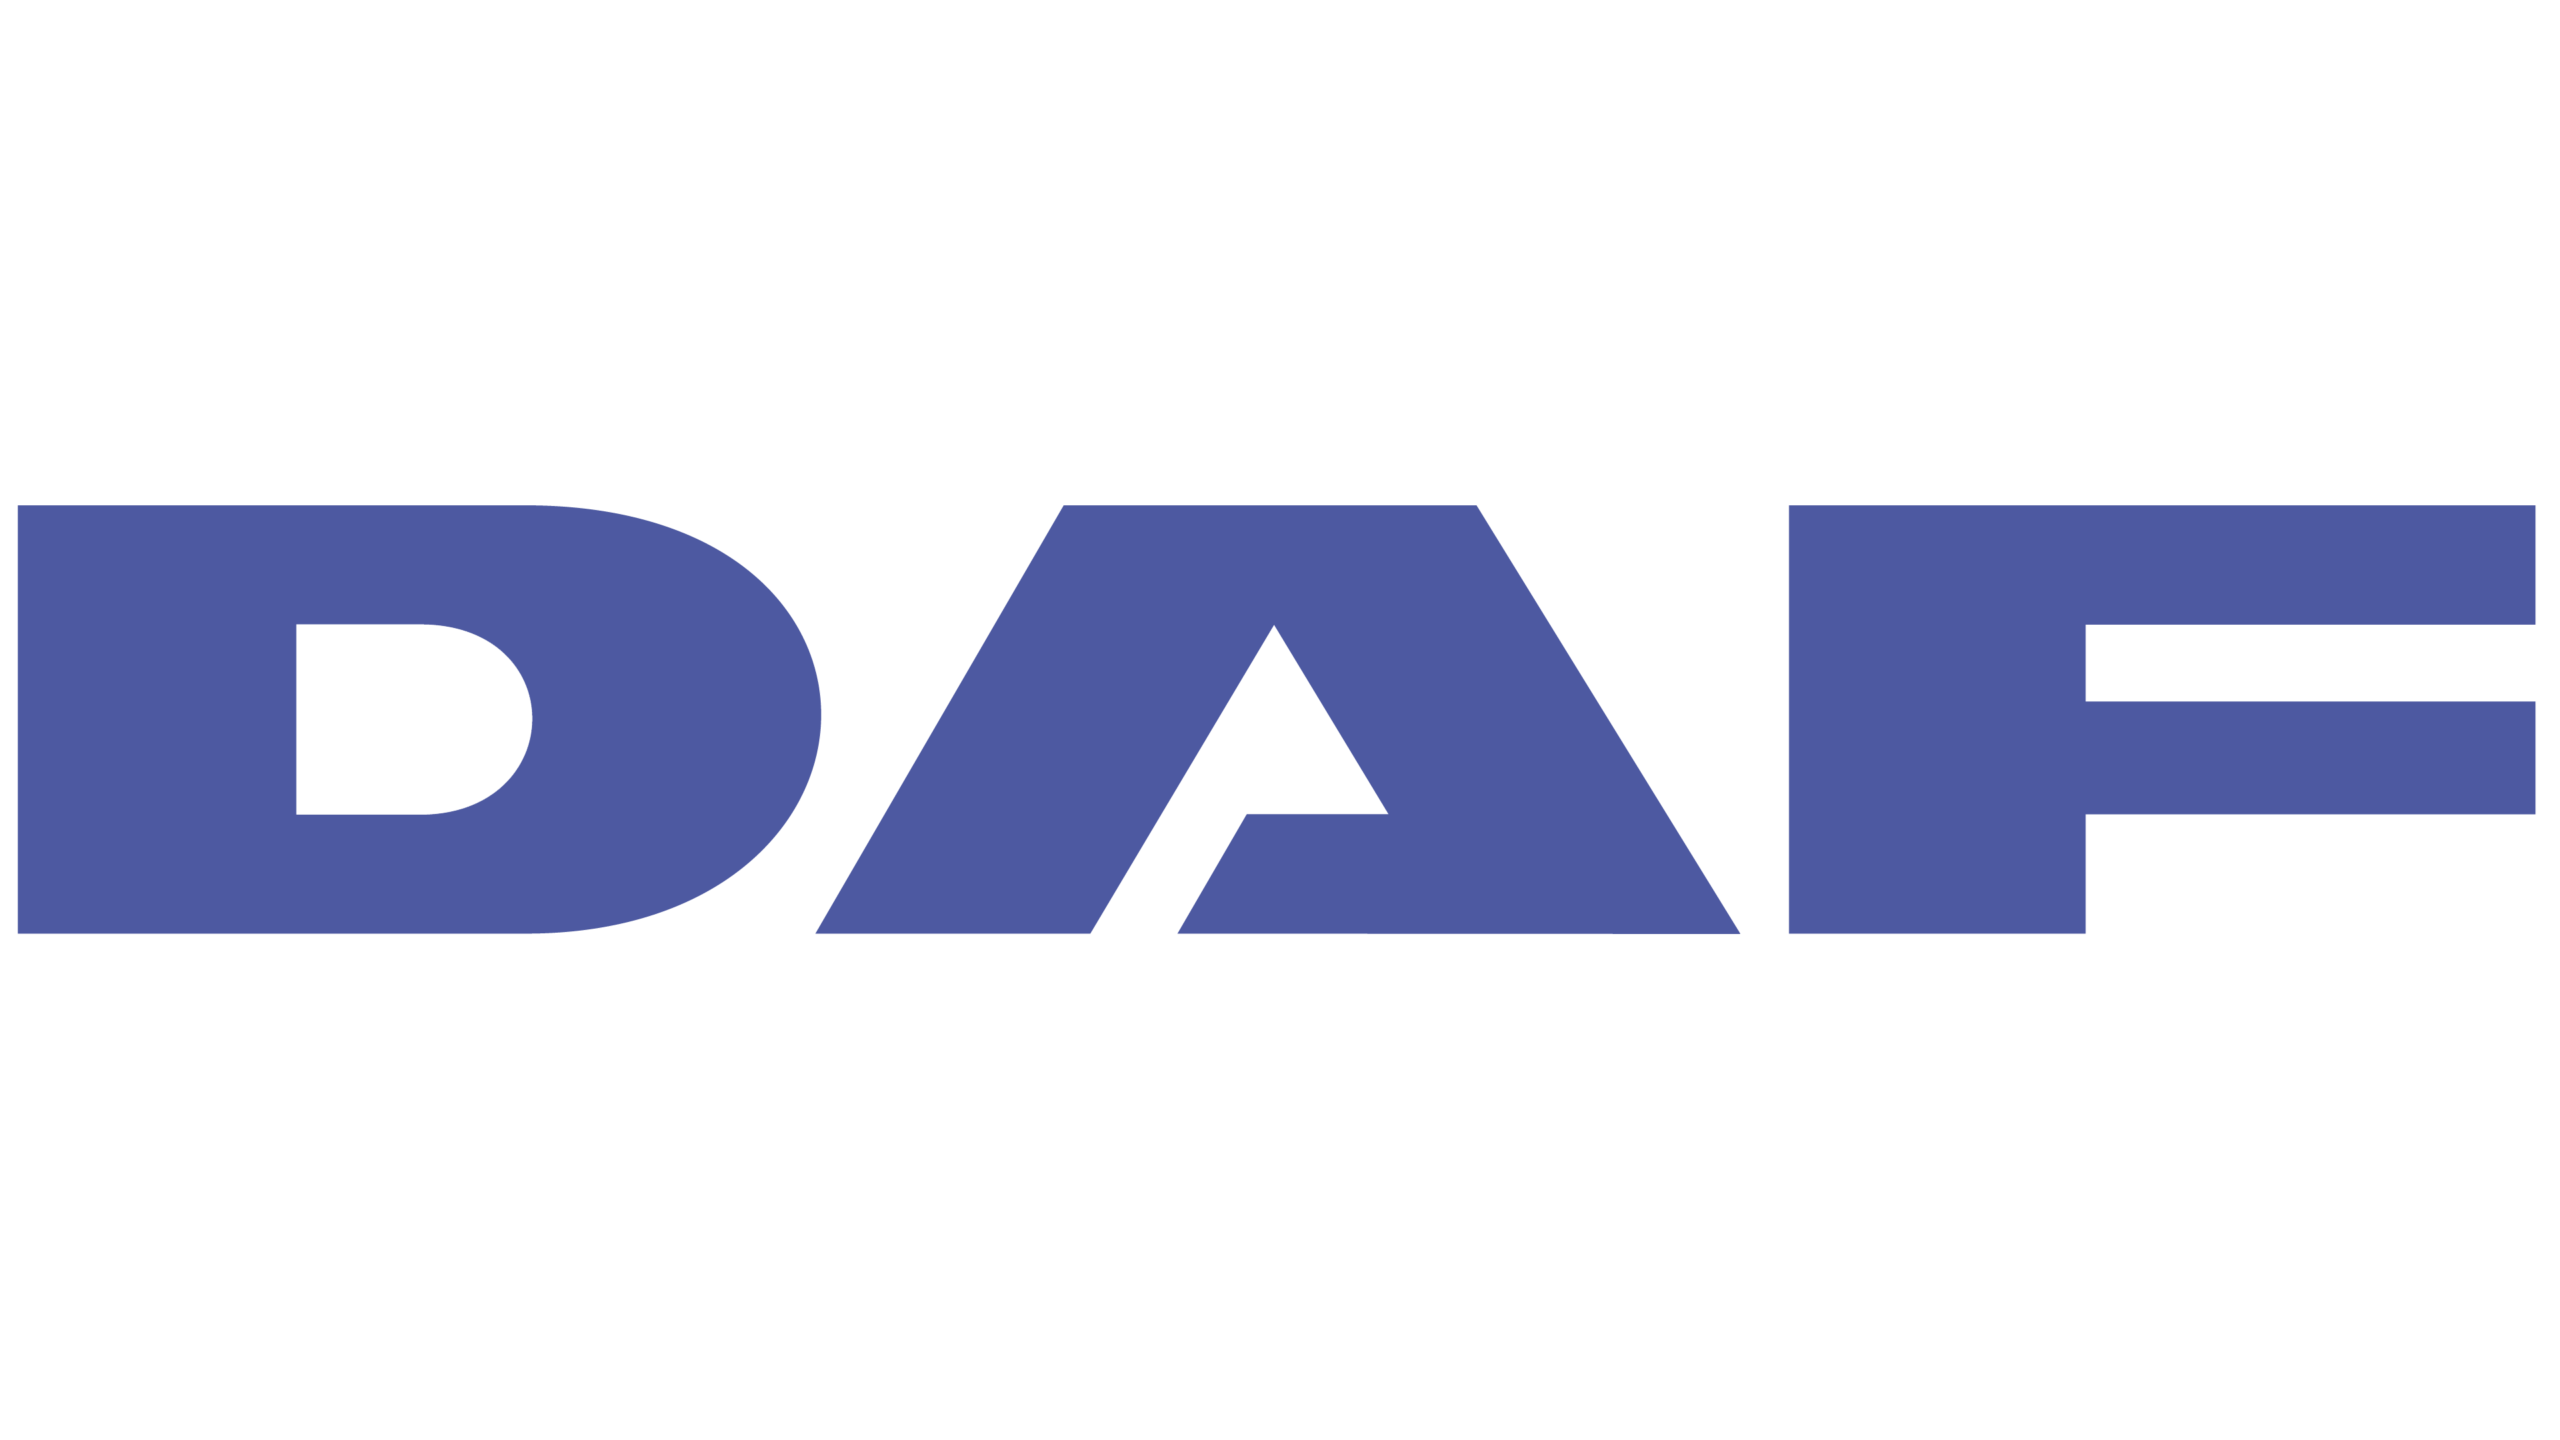 Даф лого вектор. DAF логотип PNG. DAF надпись. DAF грузовик лого. Машина дав производитель